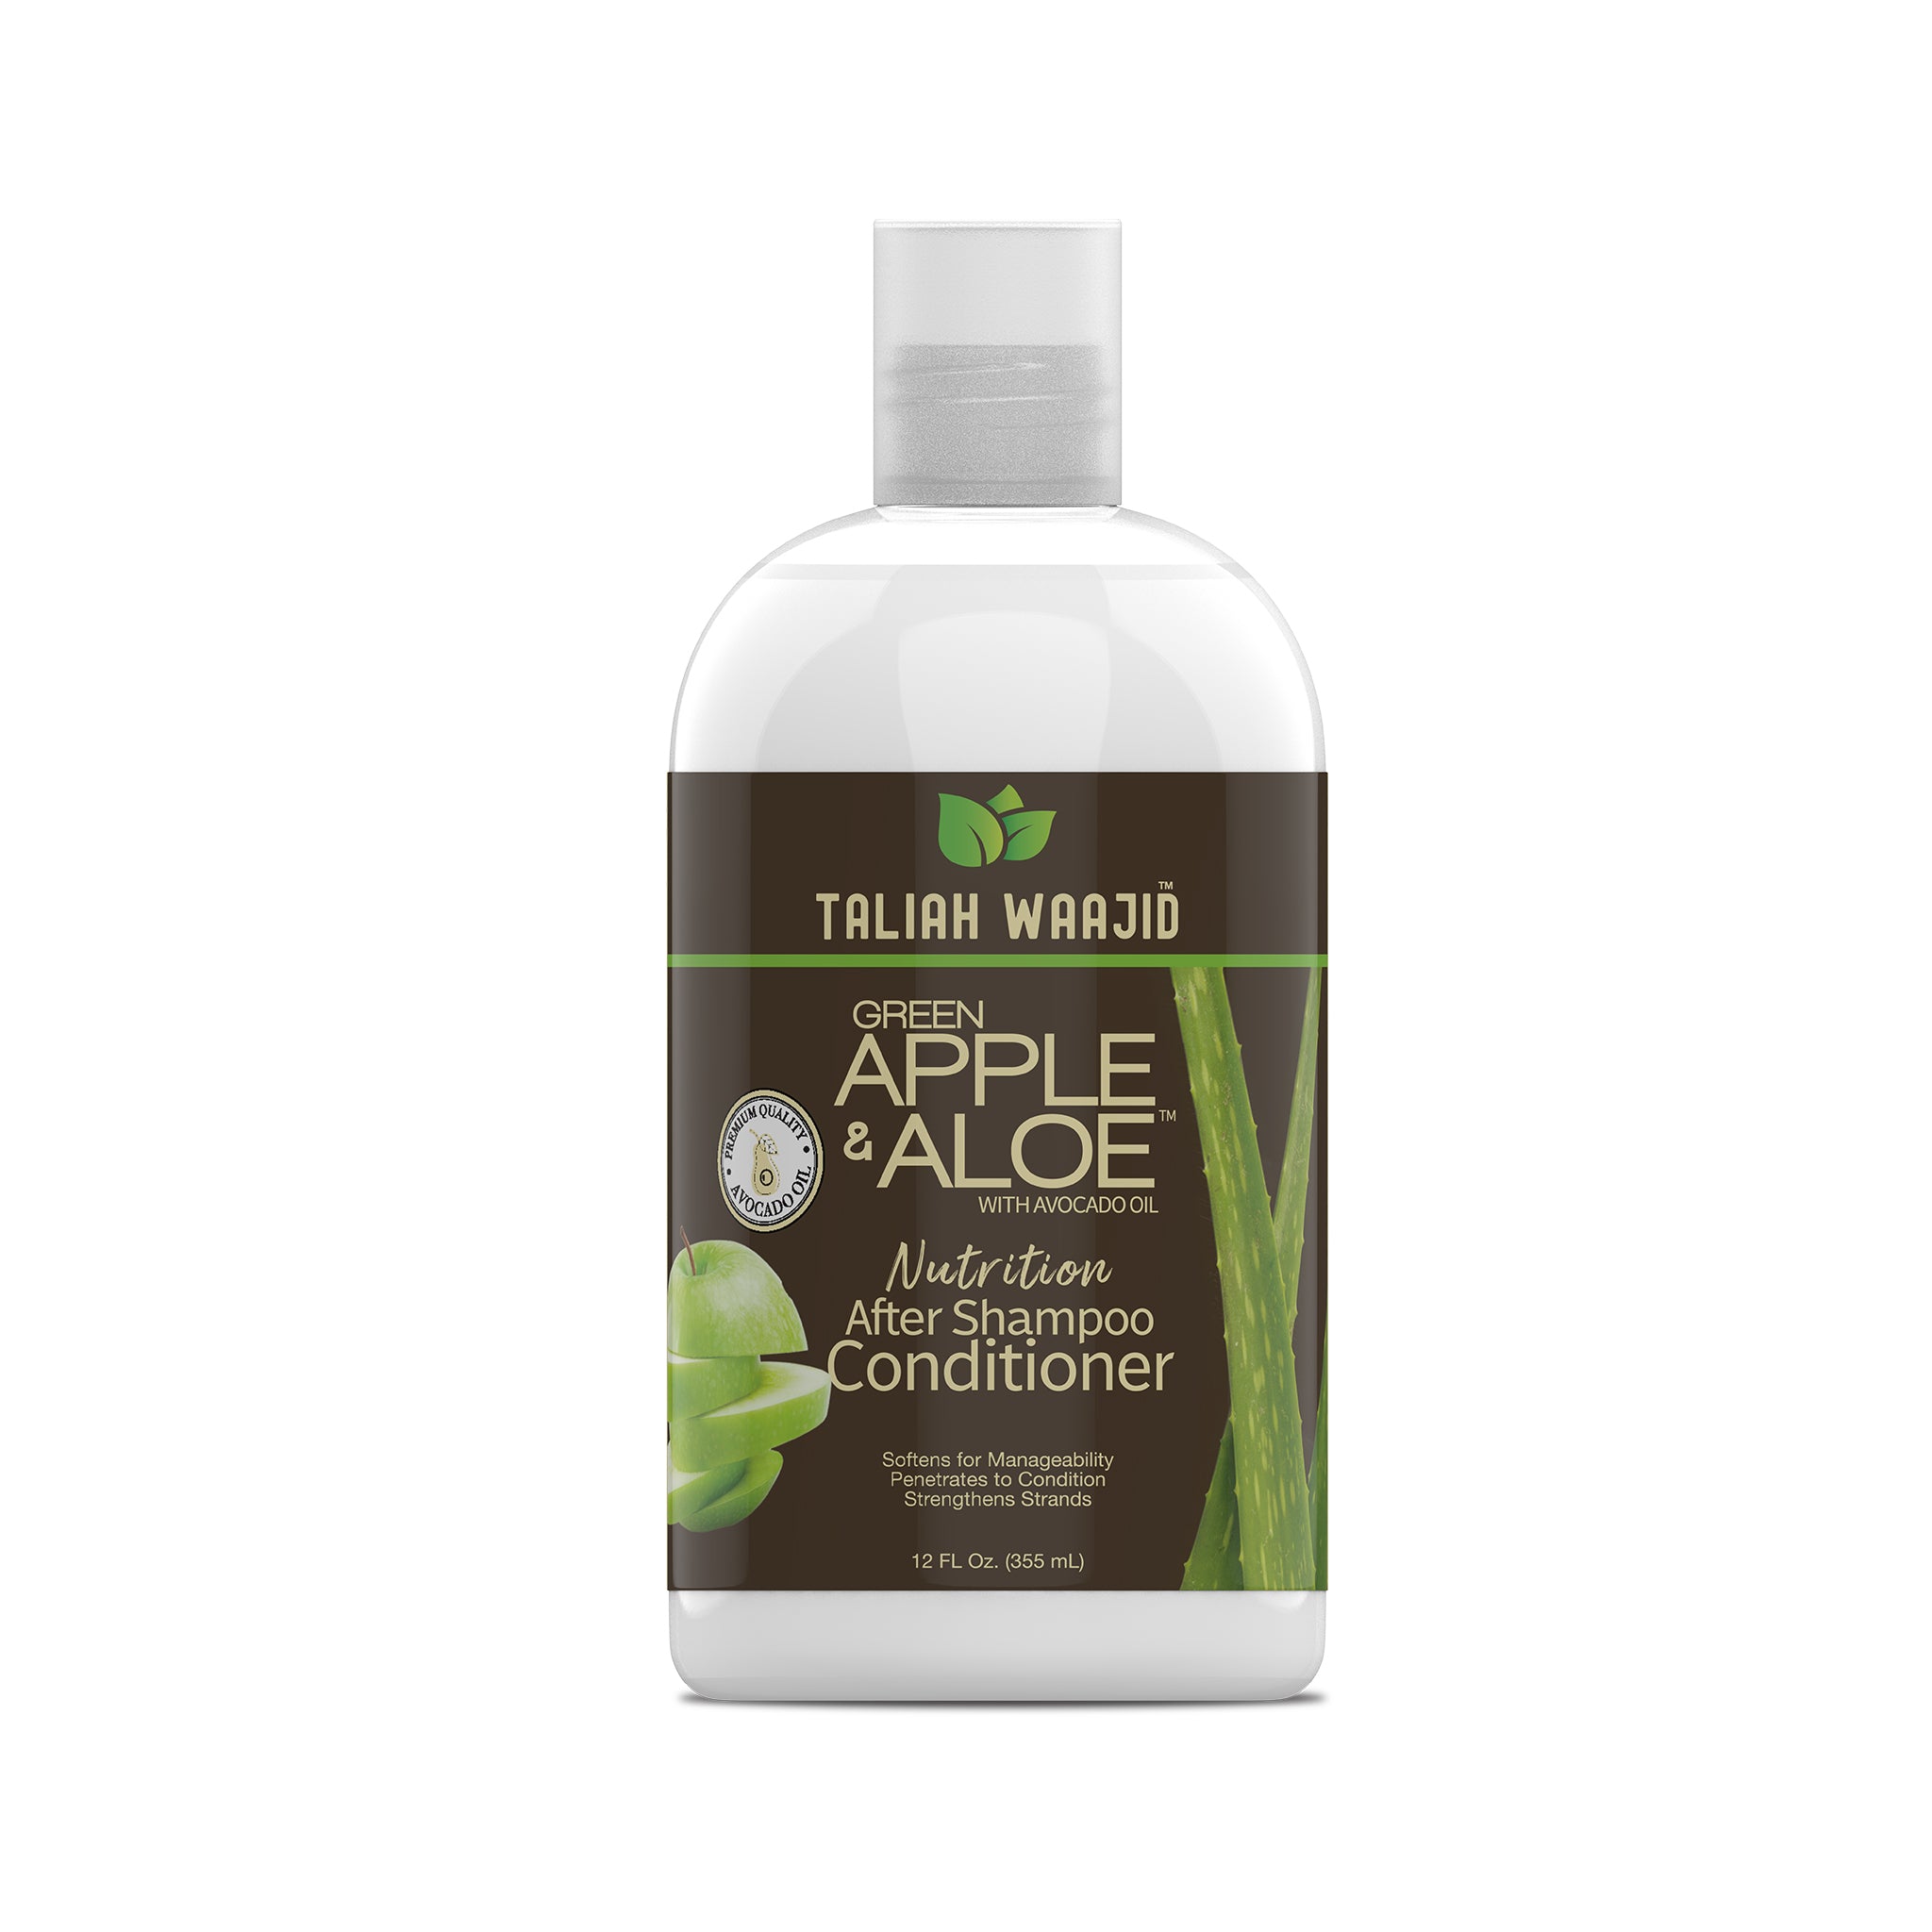 Apple & Aloe Nutrition After Shampoo Conditioner | Taliah Waajid – Taliah Waajid Brand